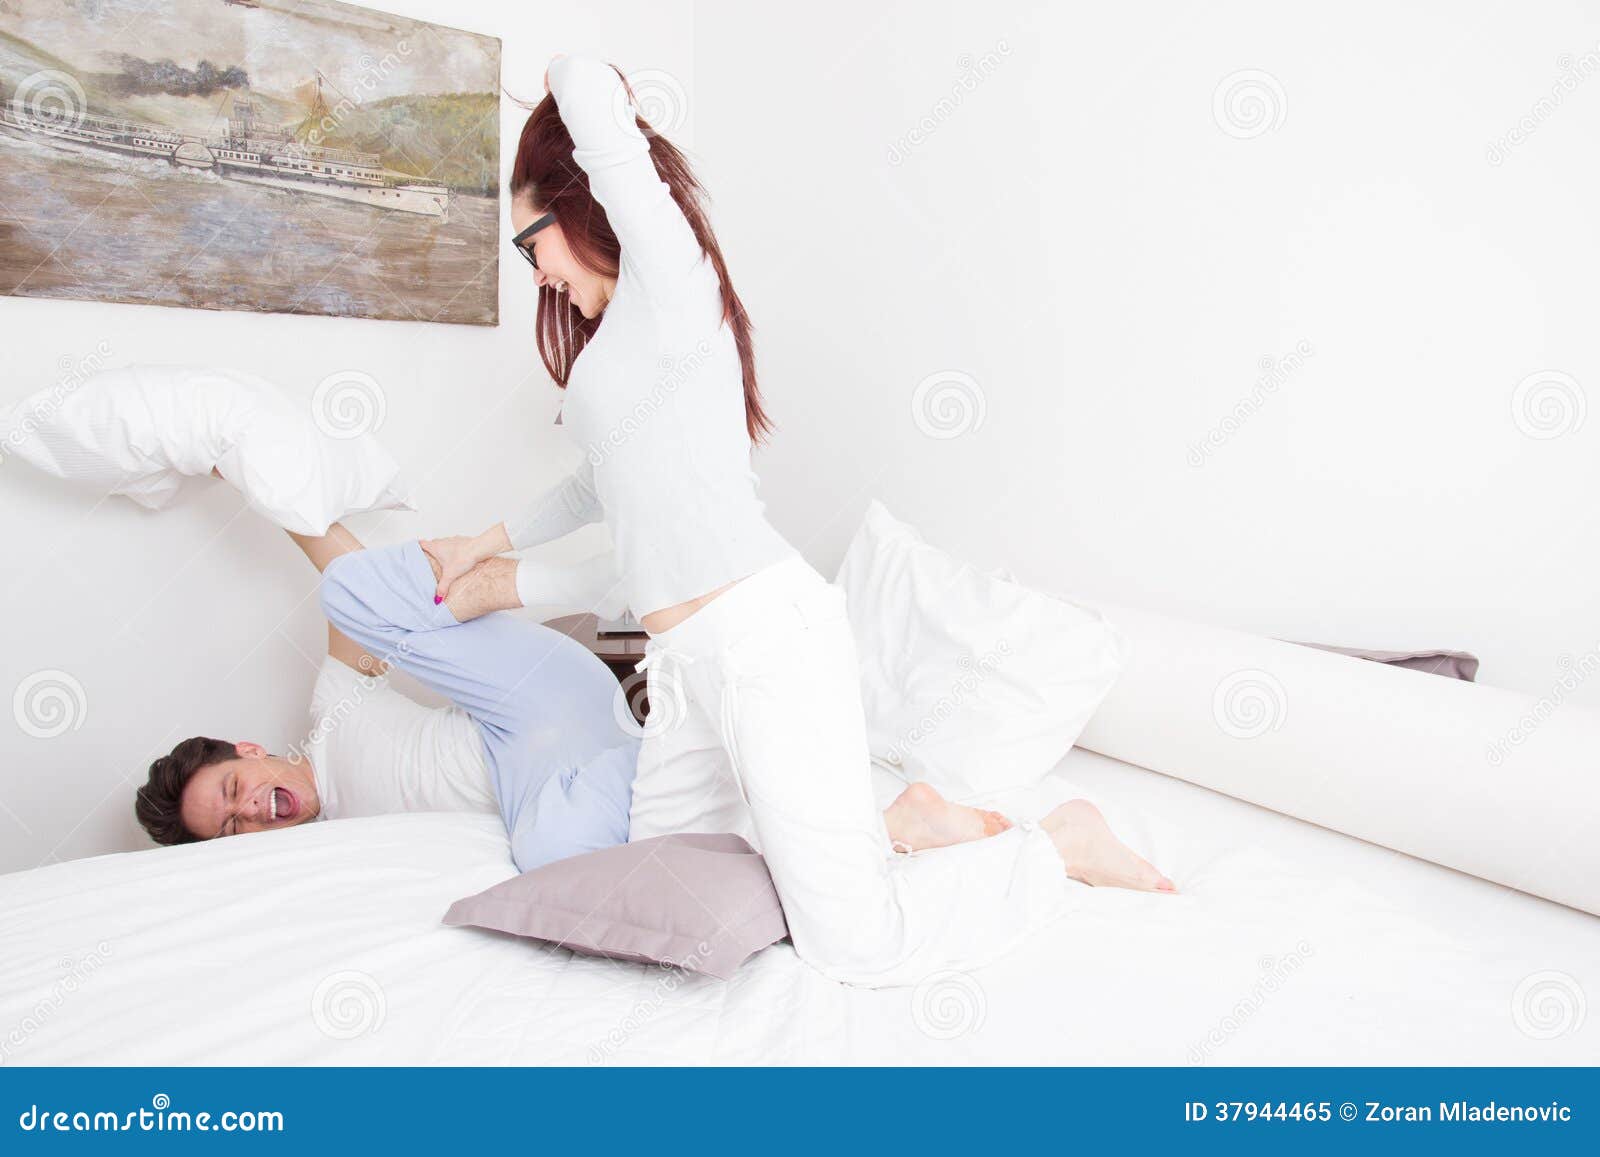 Γυναίκα στις πυτζάμες που χτυπούν τον άνδρα με το μαξιλάρι ενώ αυτός Στοκ  Εικόνα - εικόνα από lifestyles, bedroll: 37944465